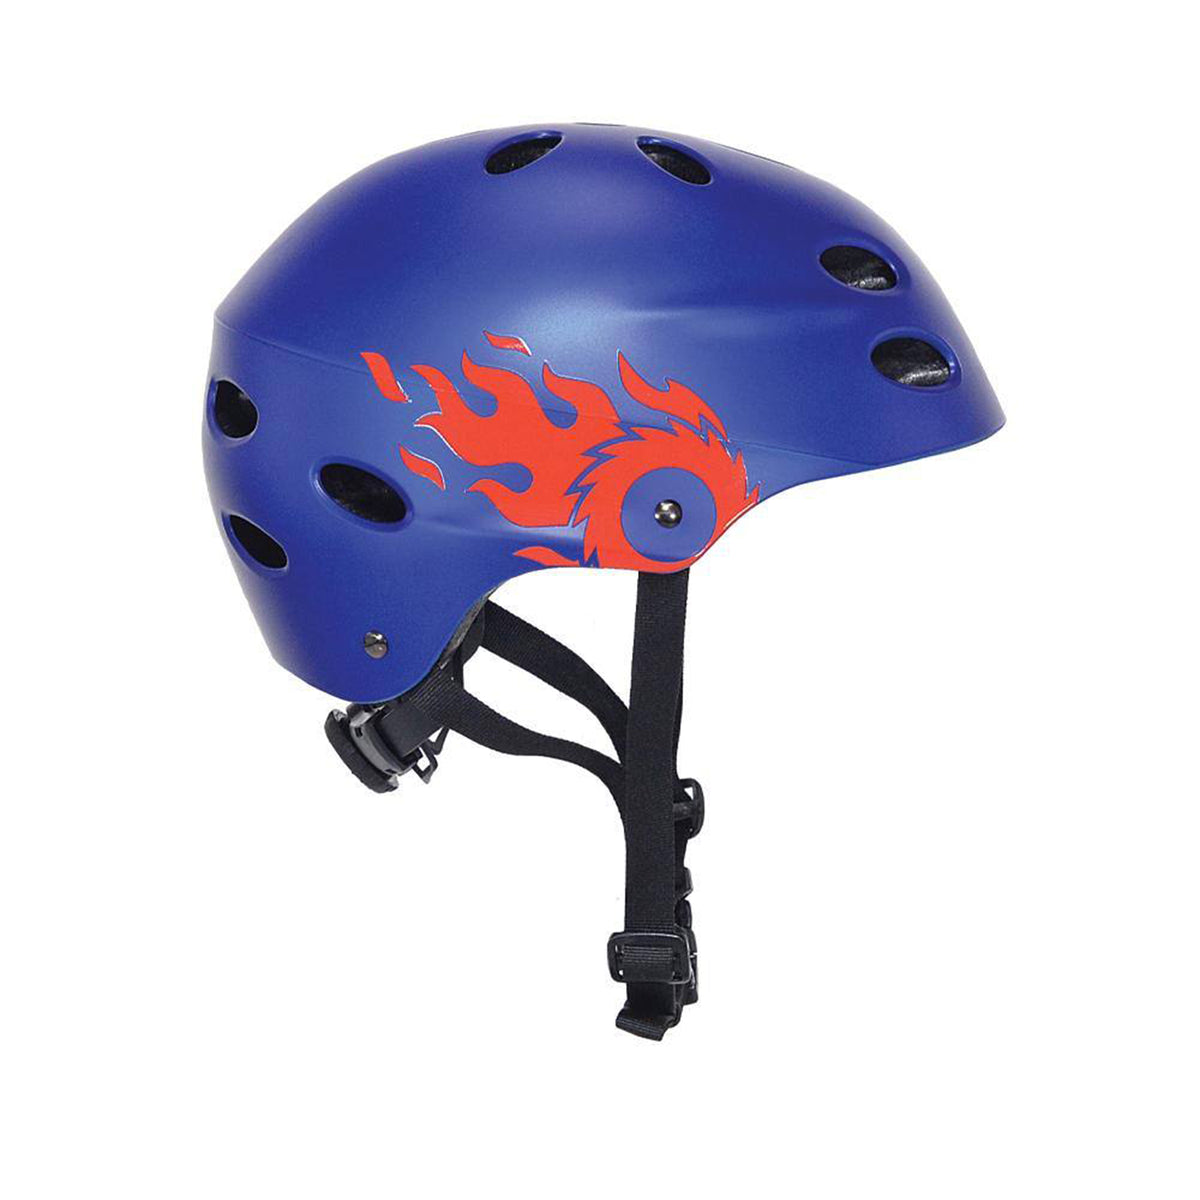 Razor® Blue Flame Child Multi-Sport Helmet | Helmet for kids Ages 5+